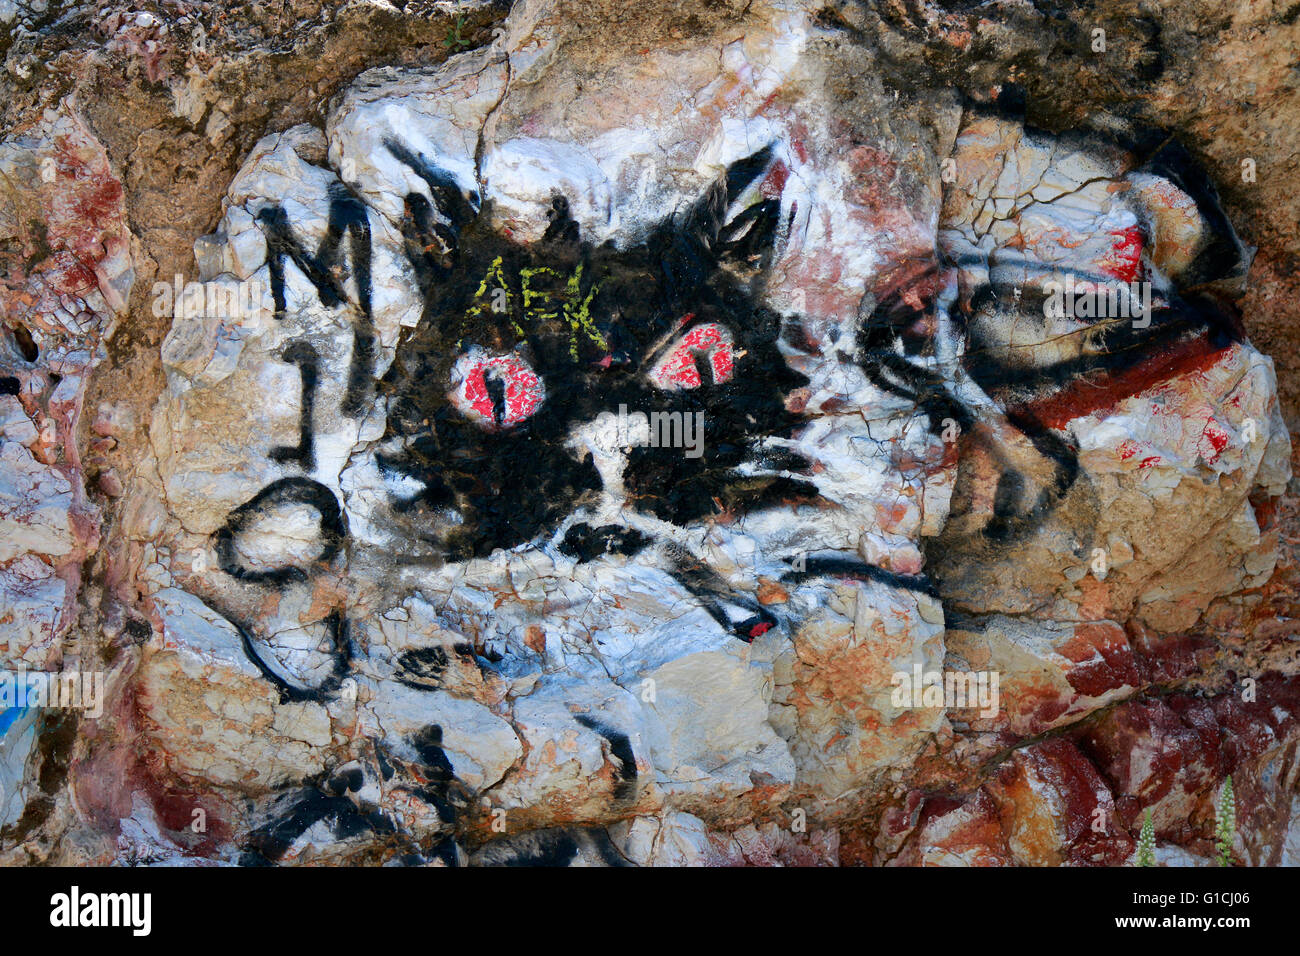 kiffende Katze - Graffity - Impressionen, Wirtschaftskrise Griechenland, 5. April 2016, Athen, Griechenland. Stock Photo